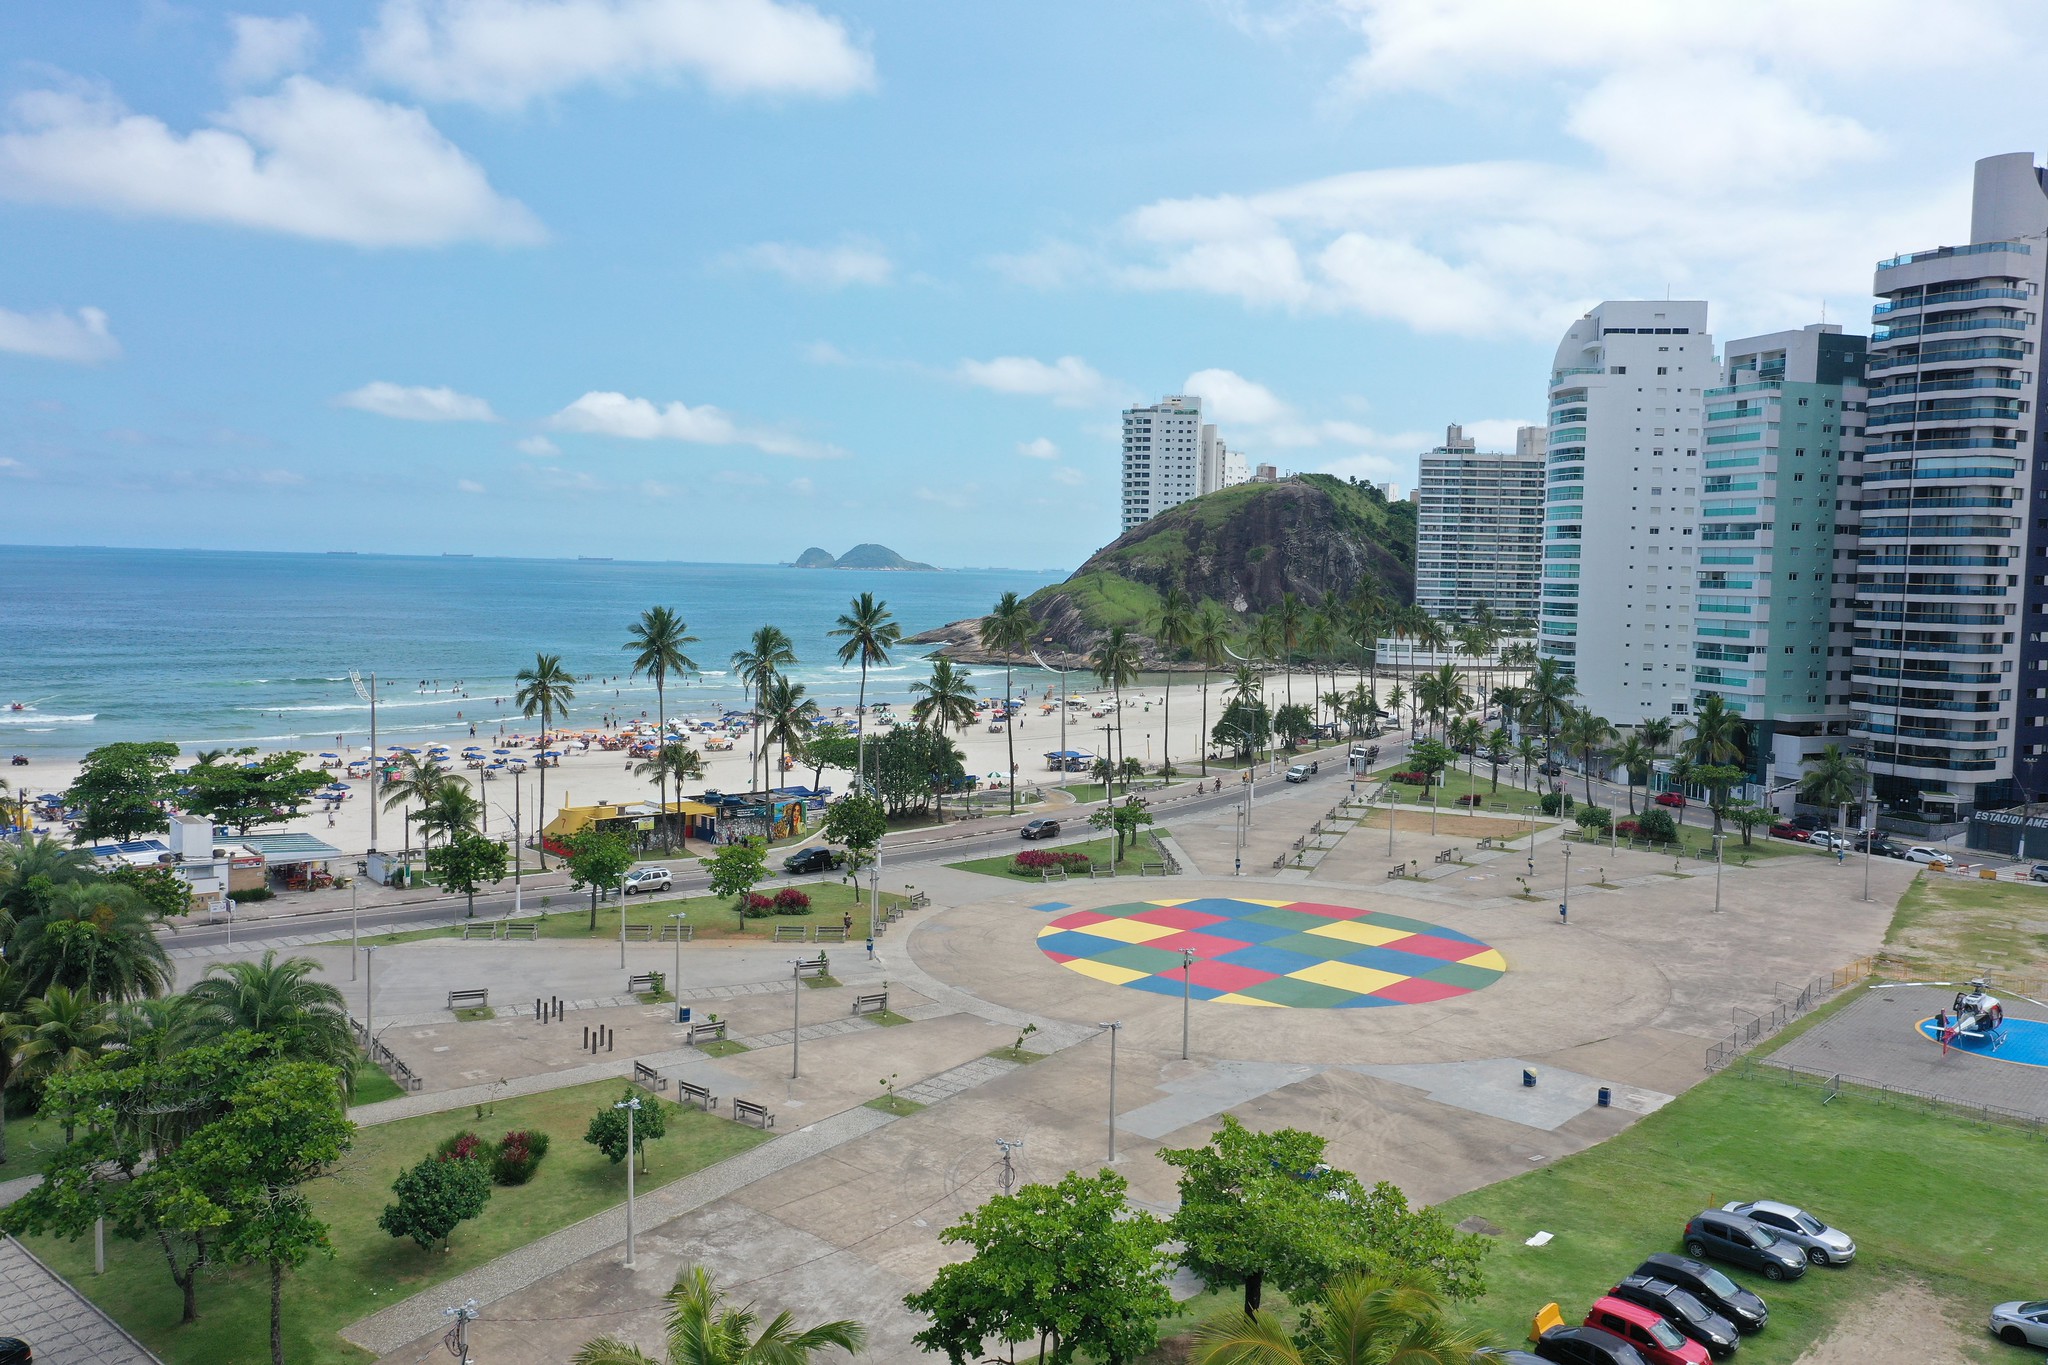 1º Festival 5Km dos Esportes espera até 4 mil pessoas na Praia da Enseada